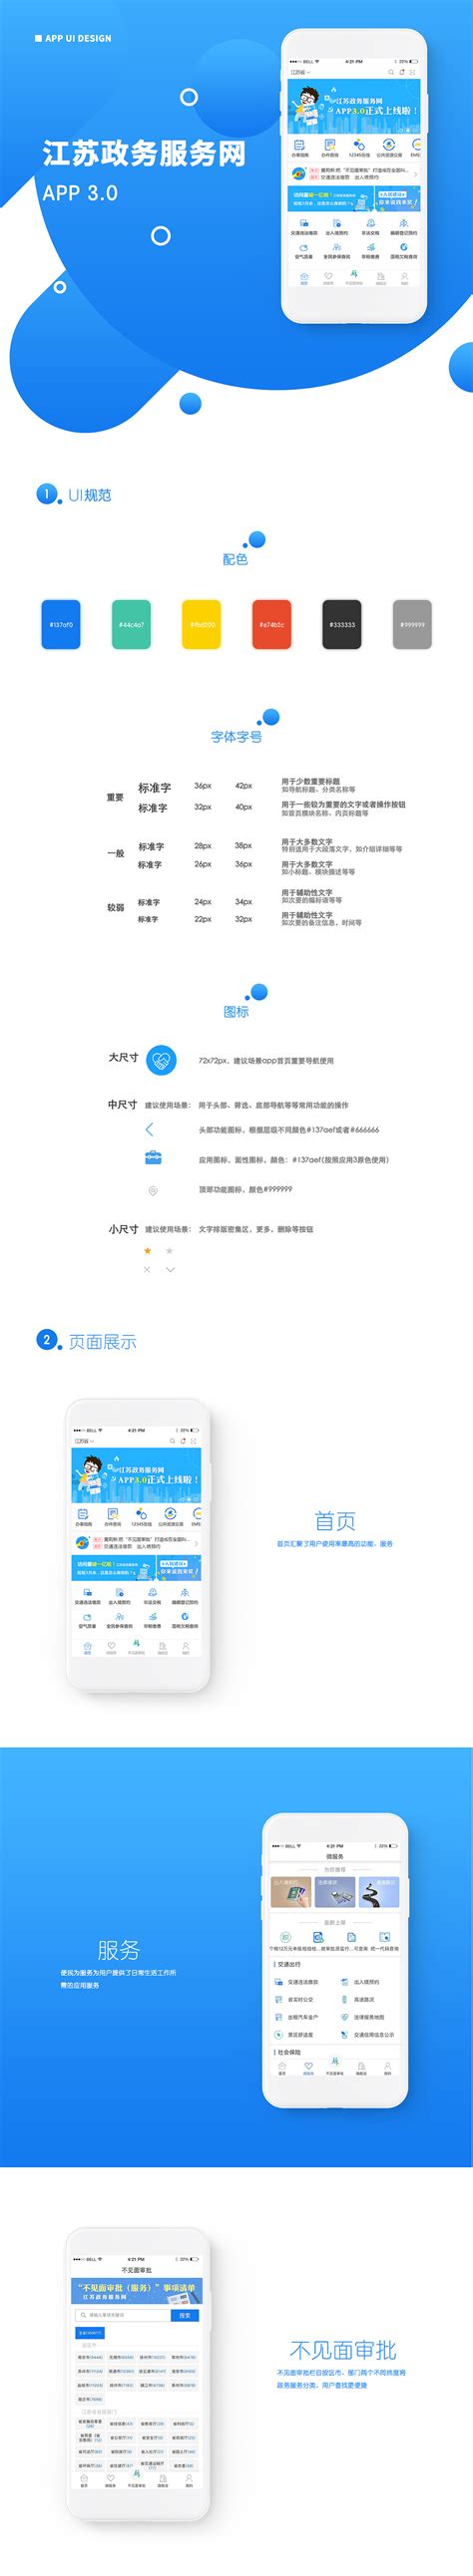 江苏政务服务网app下载,江苏政务服务网app下载安装最新版 v6.6.0-游戏鸟手游网